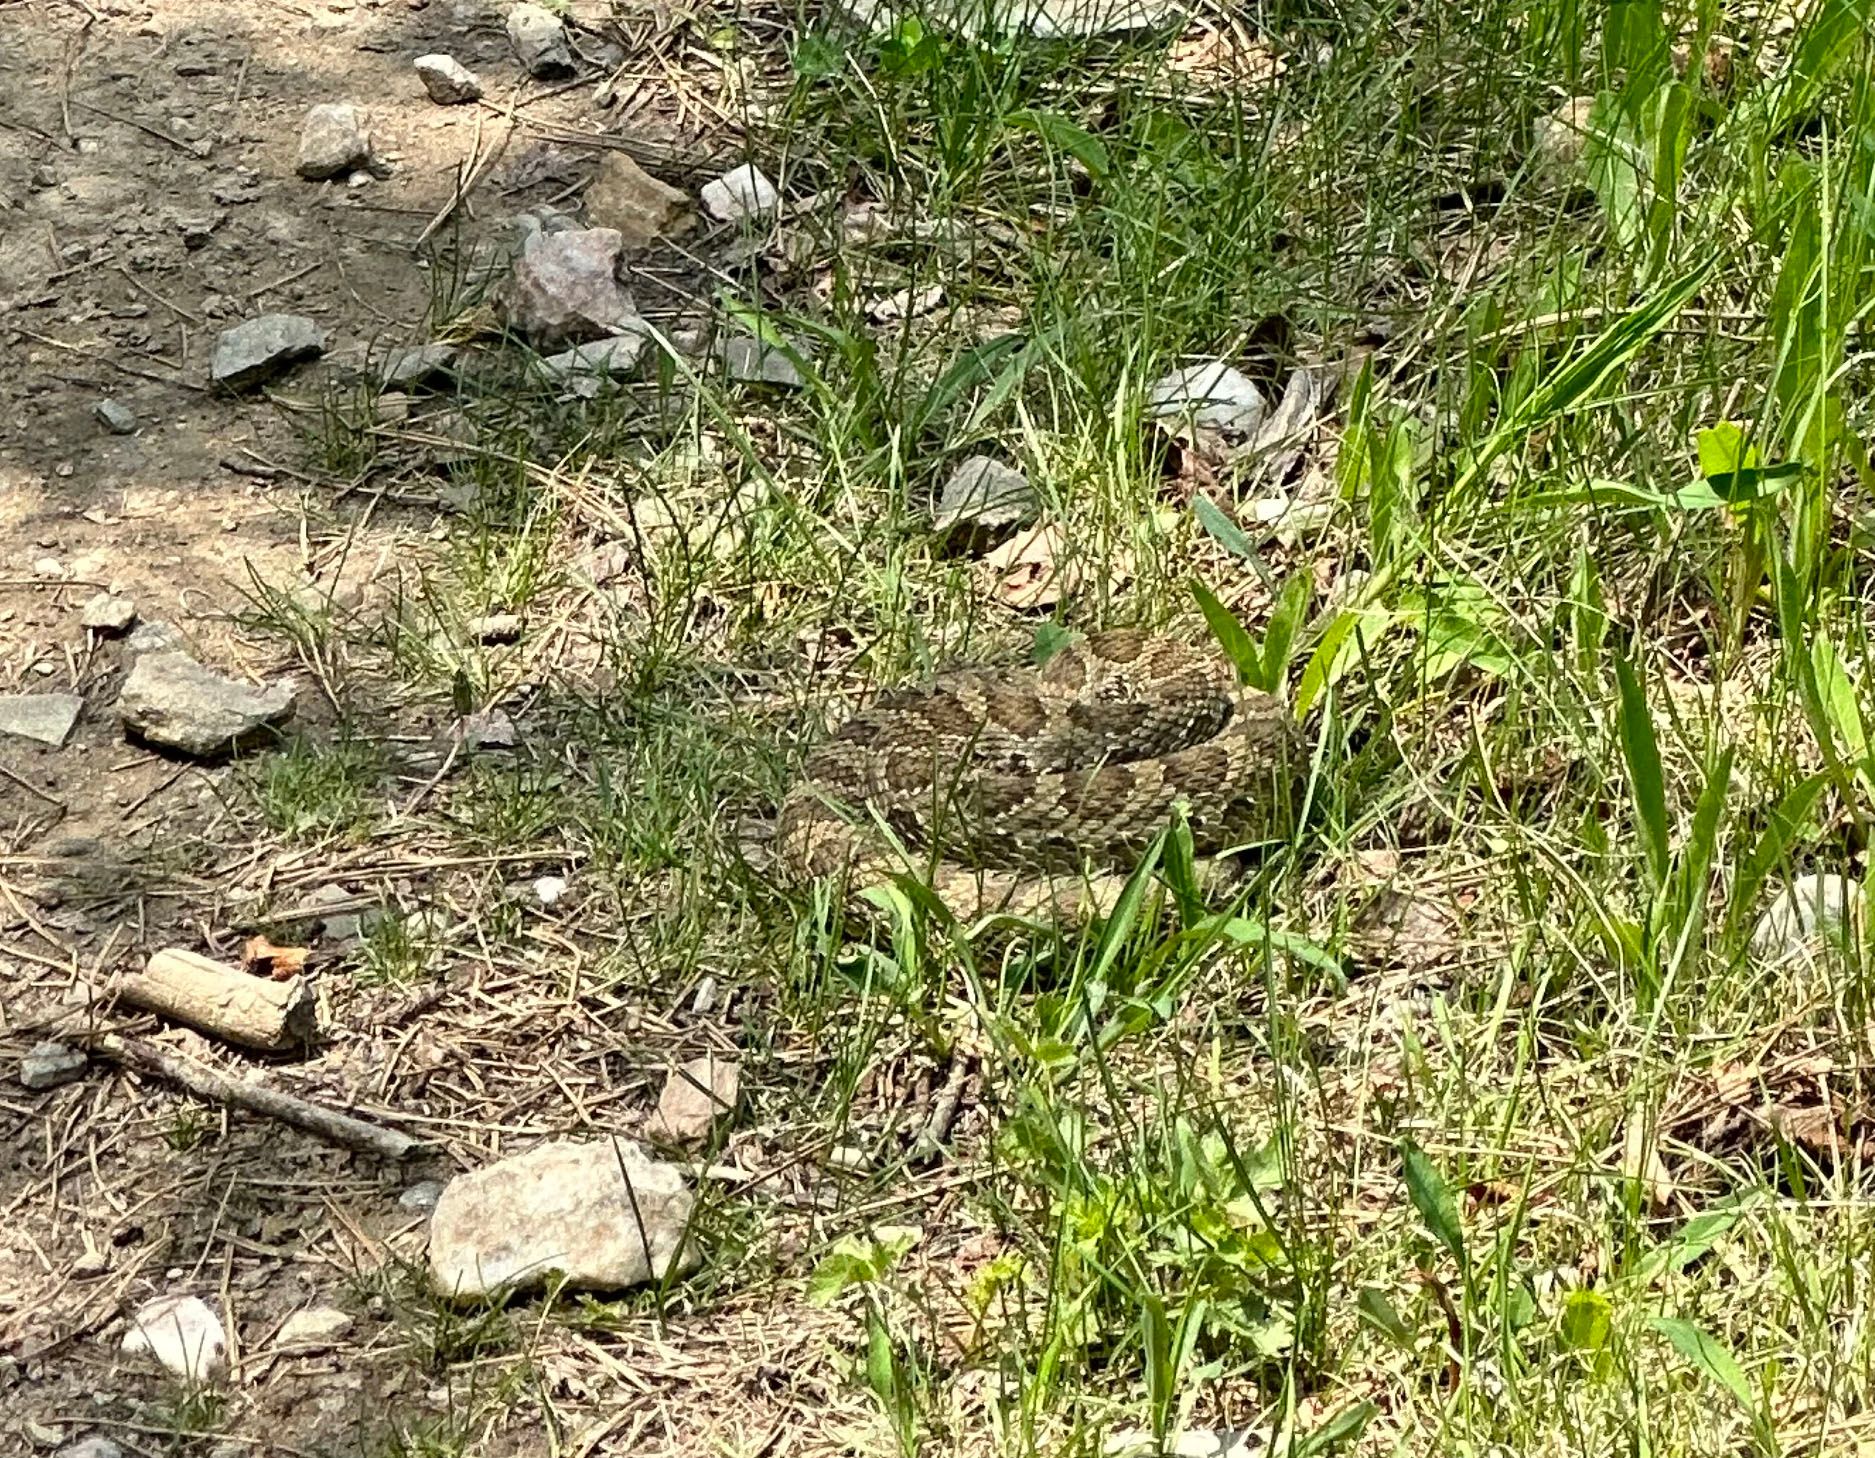 Rattlesnake in the Black Hills